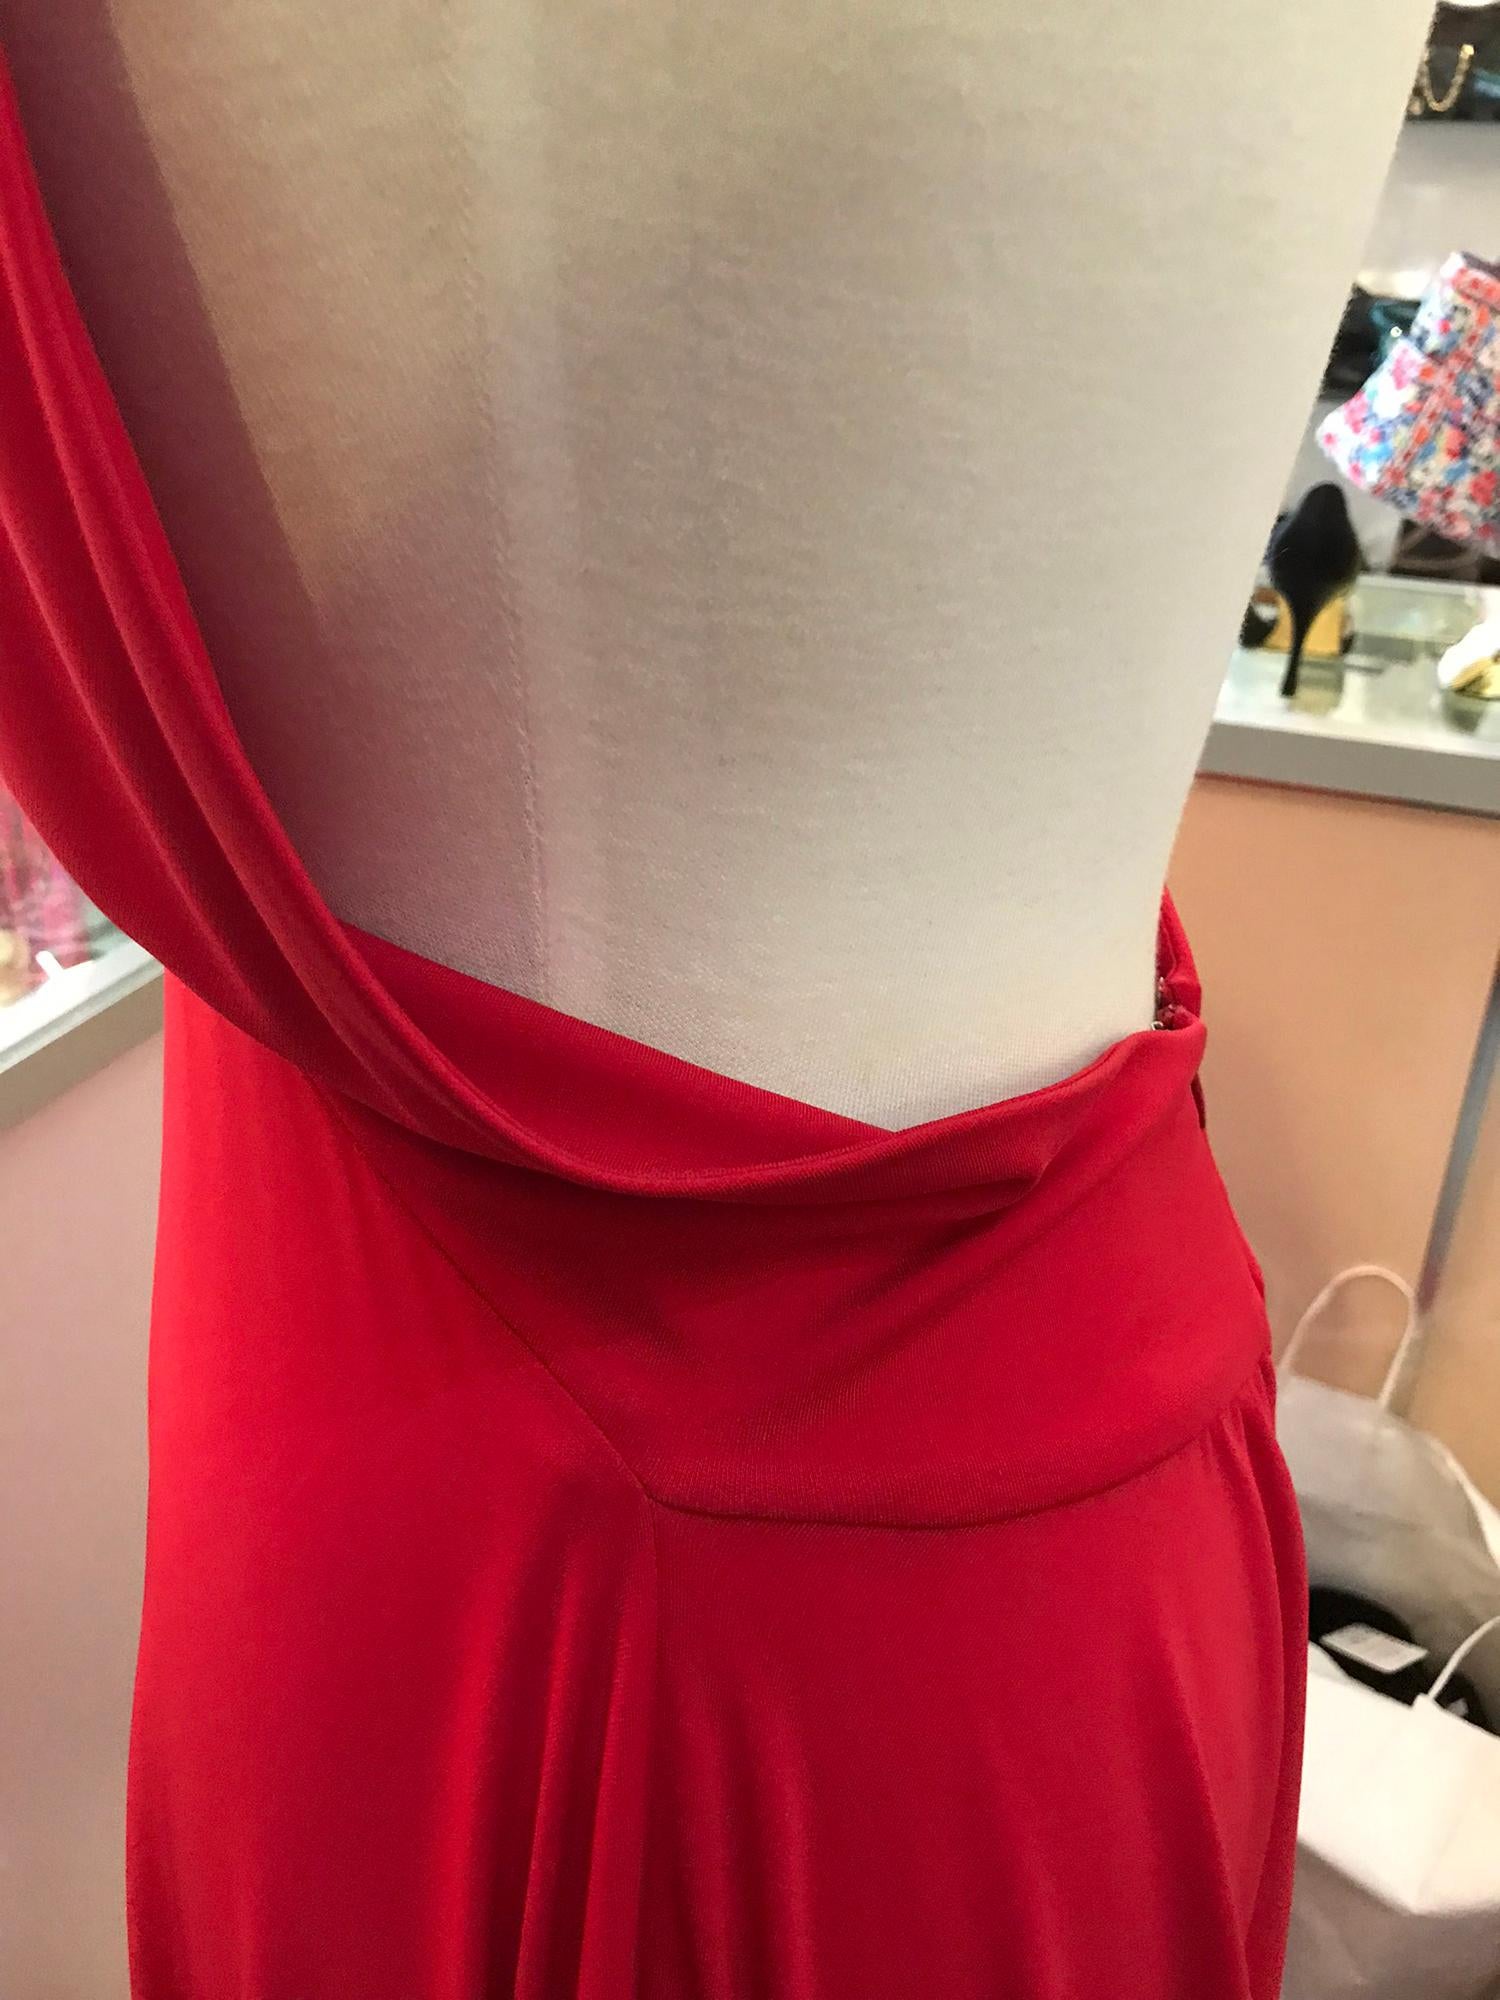 Marc Bouwer Matte Red Jersey Plunge Halter Dress Super Model Length 10